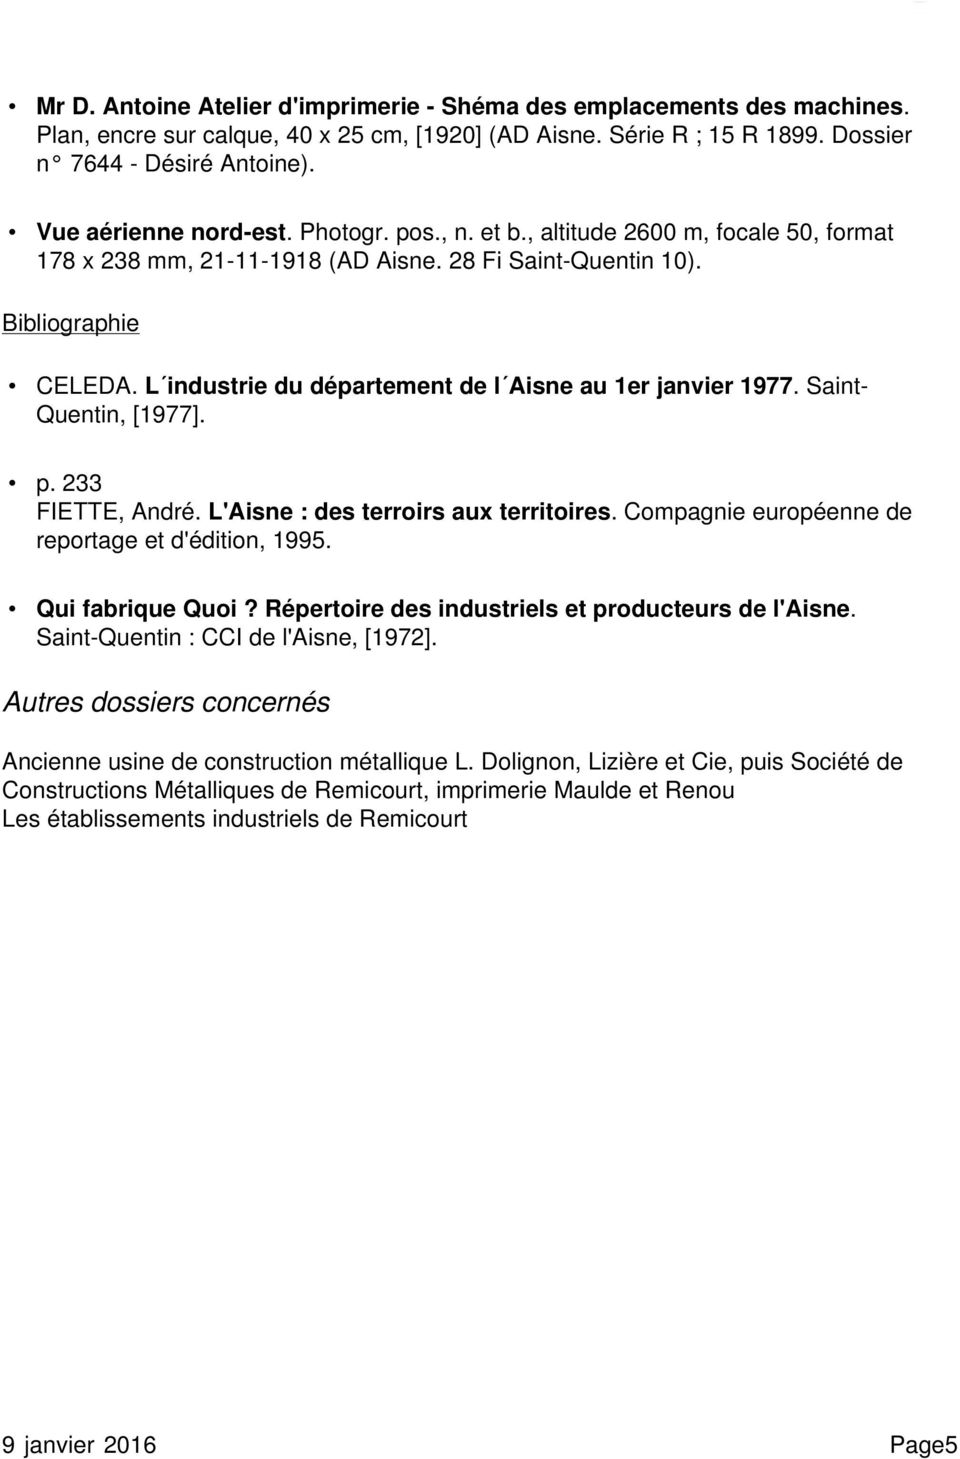 L industrie du département de l Aisne au 1er janvier 1977. Saint- Quentin, [1977]. p. 233 FIETTE, André. L'Aisne : des terroirs aux territoires. Compagnie européenne de reportage et d'édition, 1995.